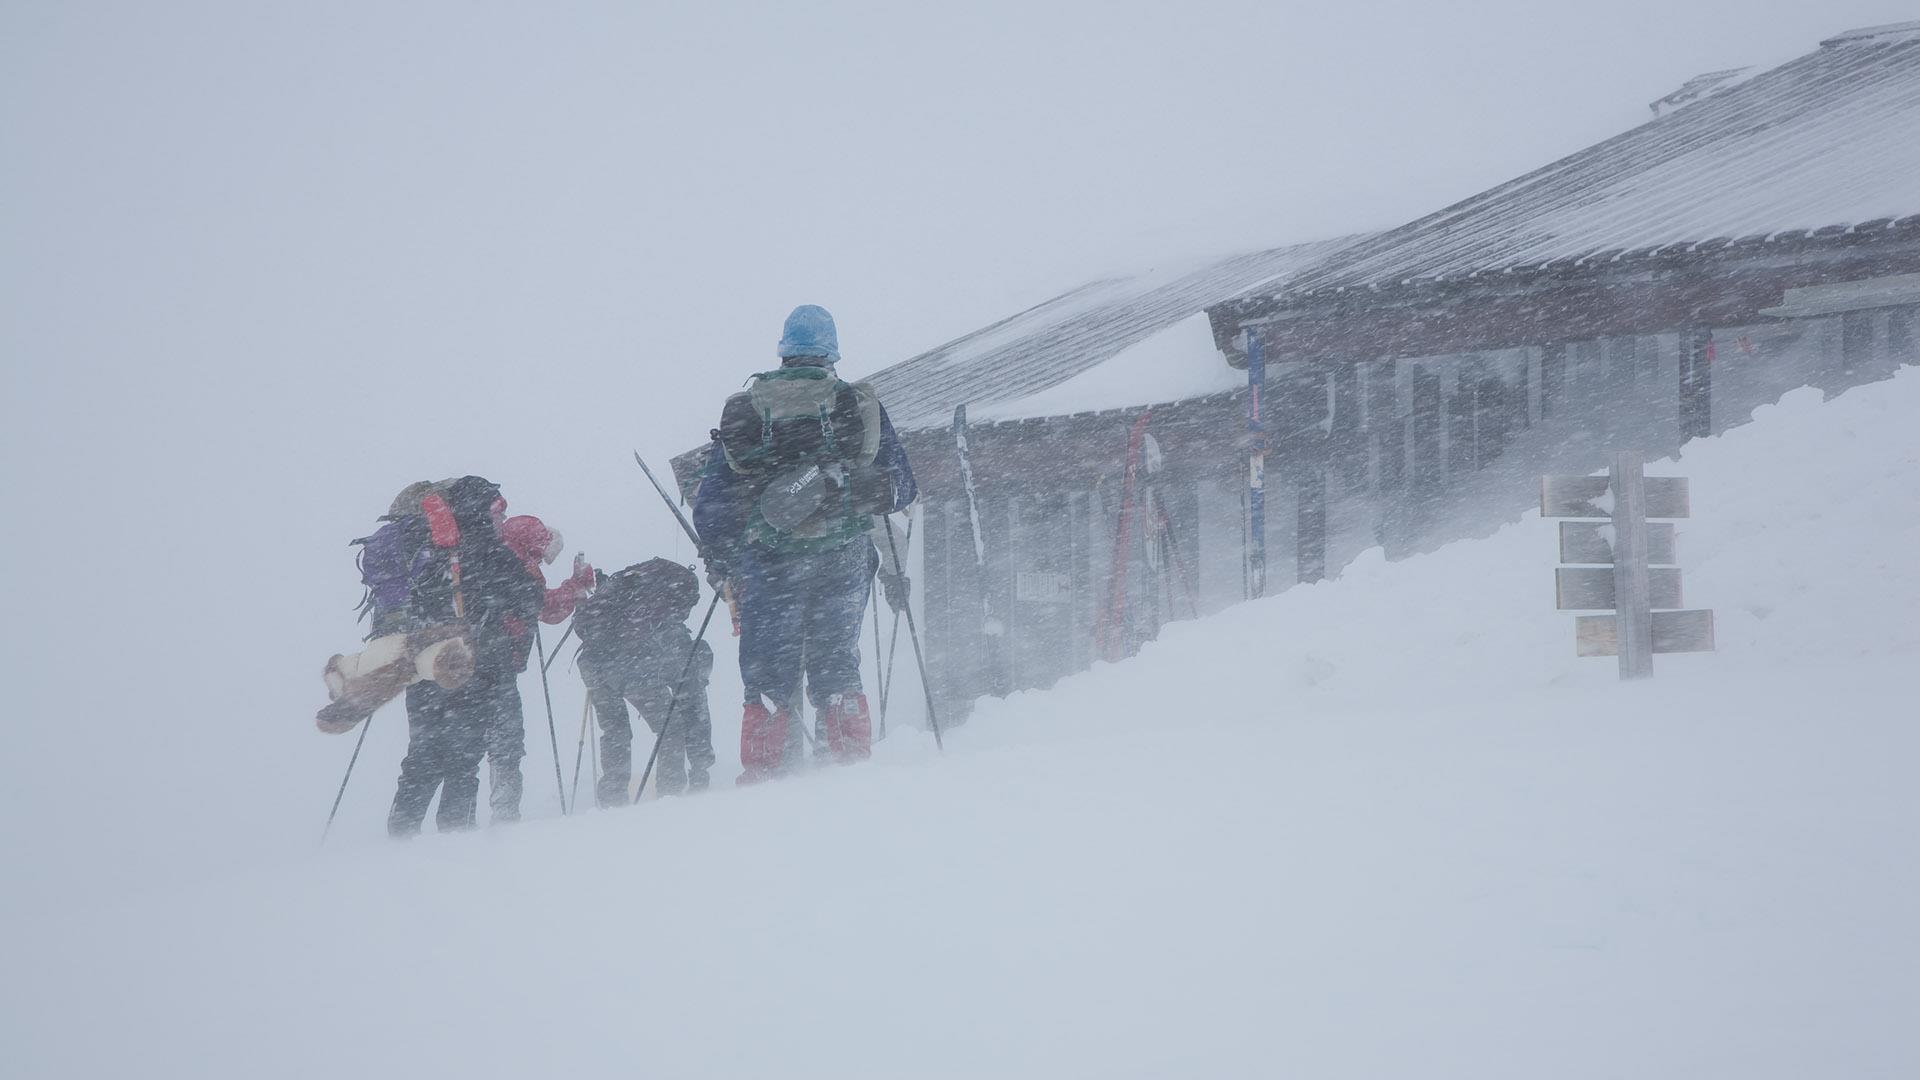 Fjellskigåere utenfor en turisthytte i tett snødrev gjør seg klar til å legge ut på tur.